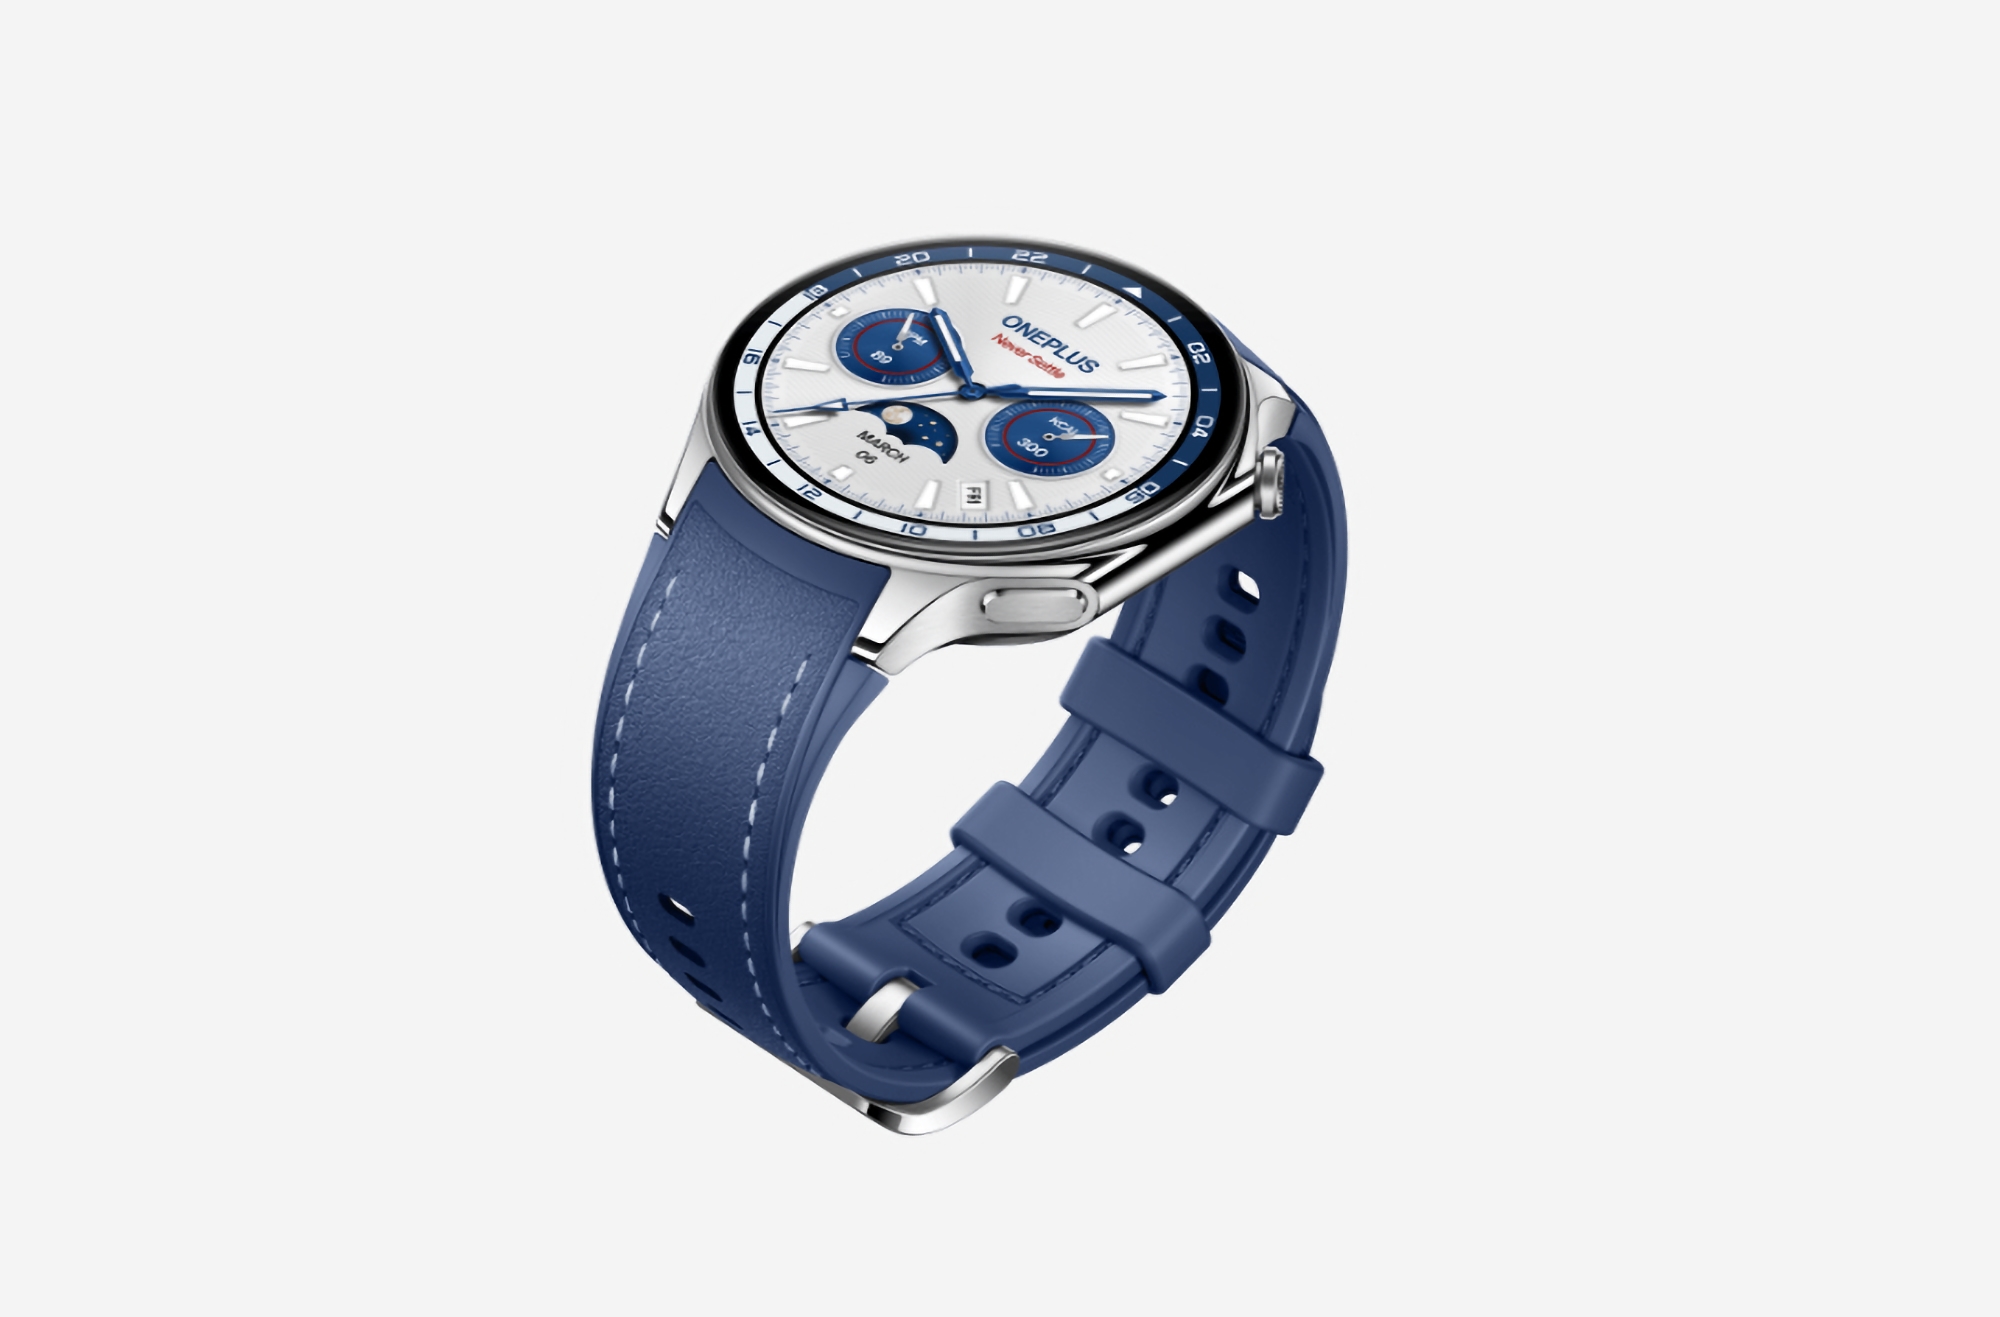 OnePlus Watch 2 Nordic Blue Edition дебютировали в Европе: специальная версия OnePlus Watch 2 со скандинавским дизайном и ценой 349